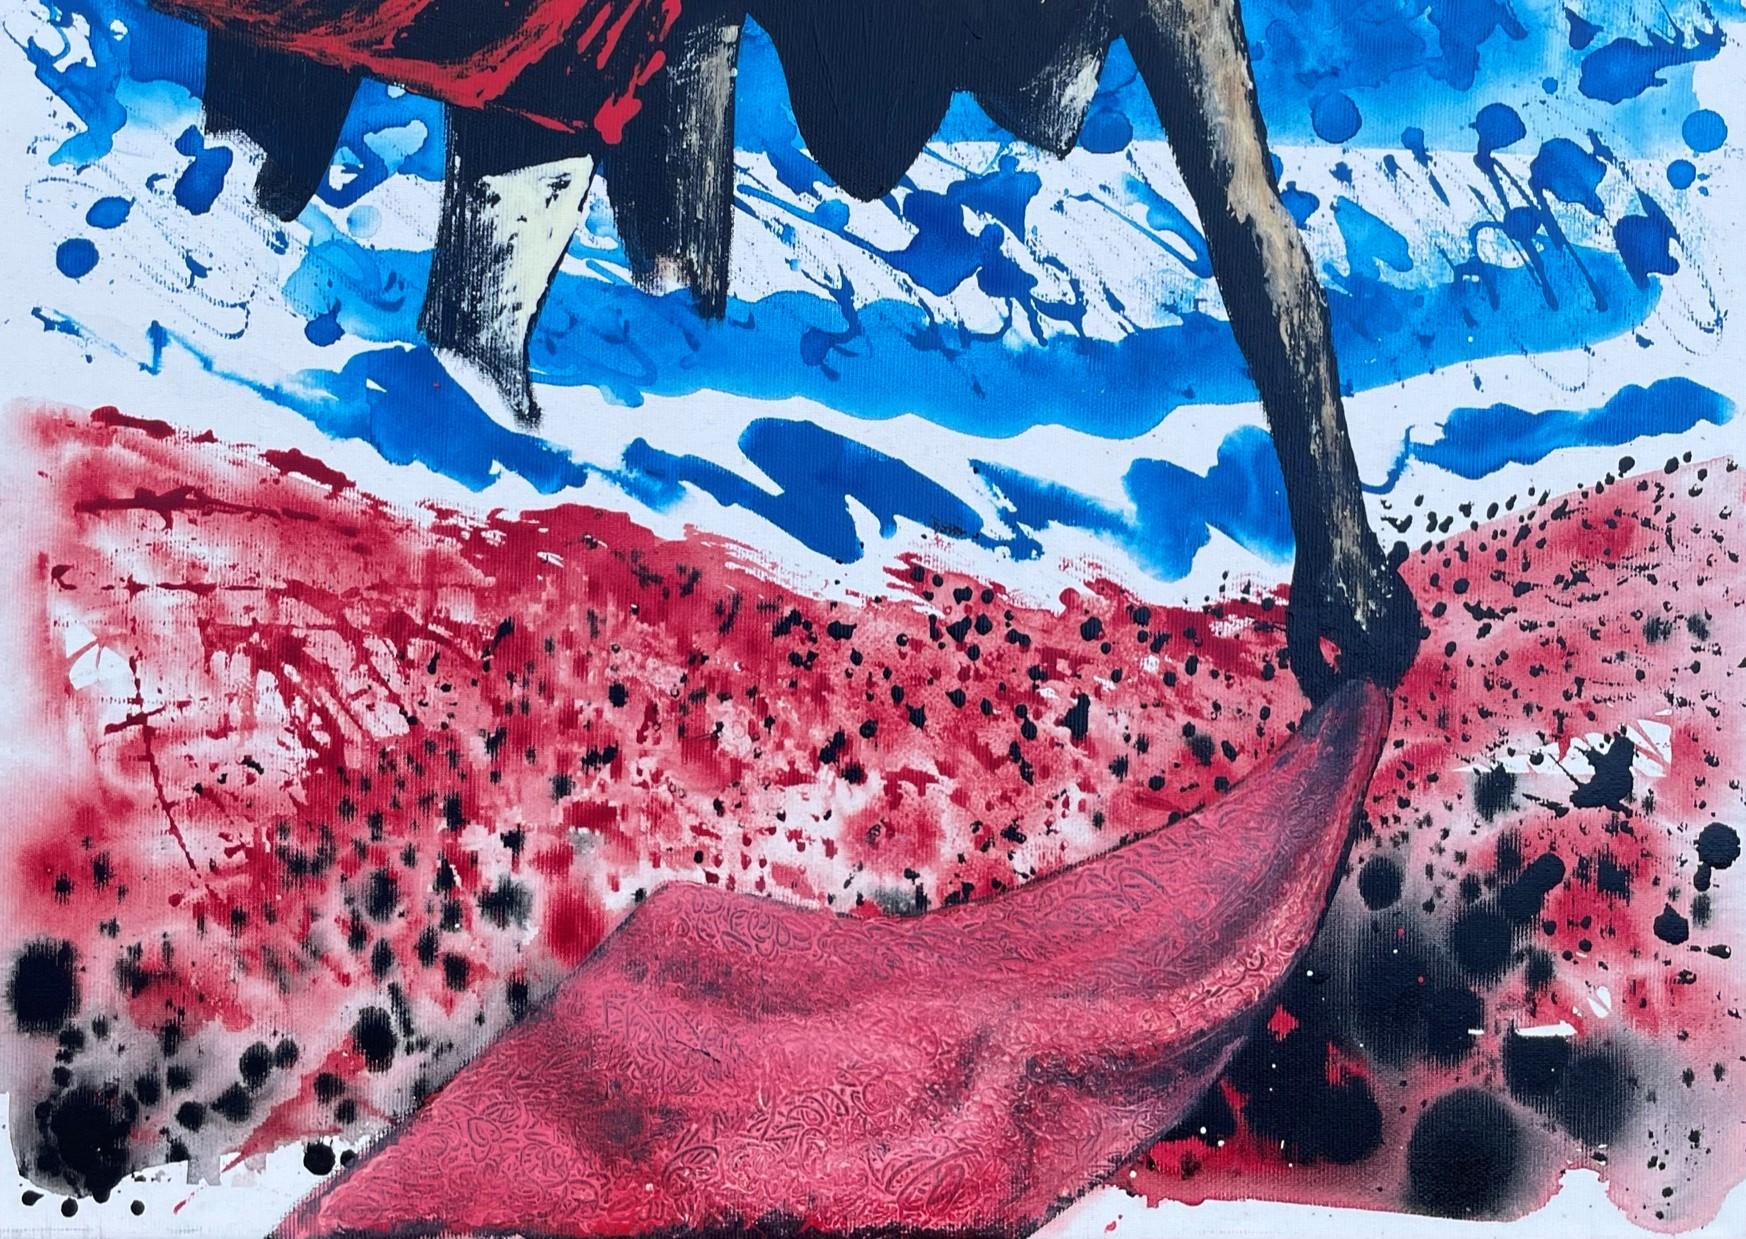 Femmes et eau - 21e sicle, Nu, Rouge, Bleu, Peinture contemporaine, Mer - Contemporain Painting par Alexandru Rădvan